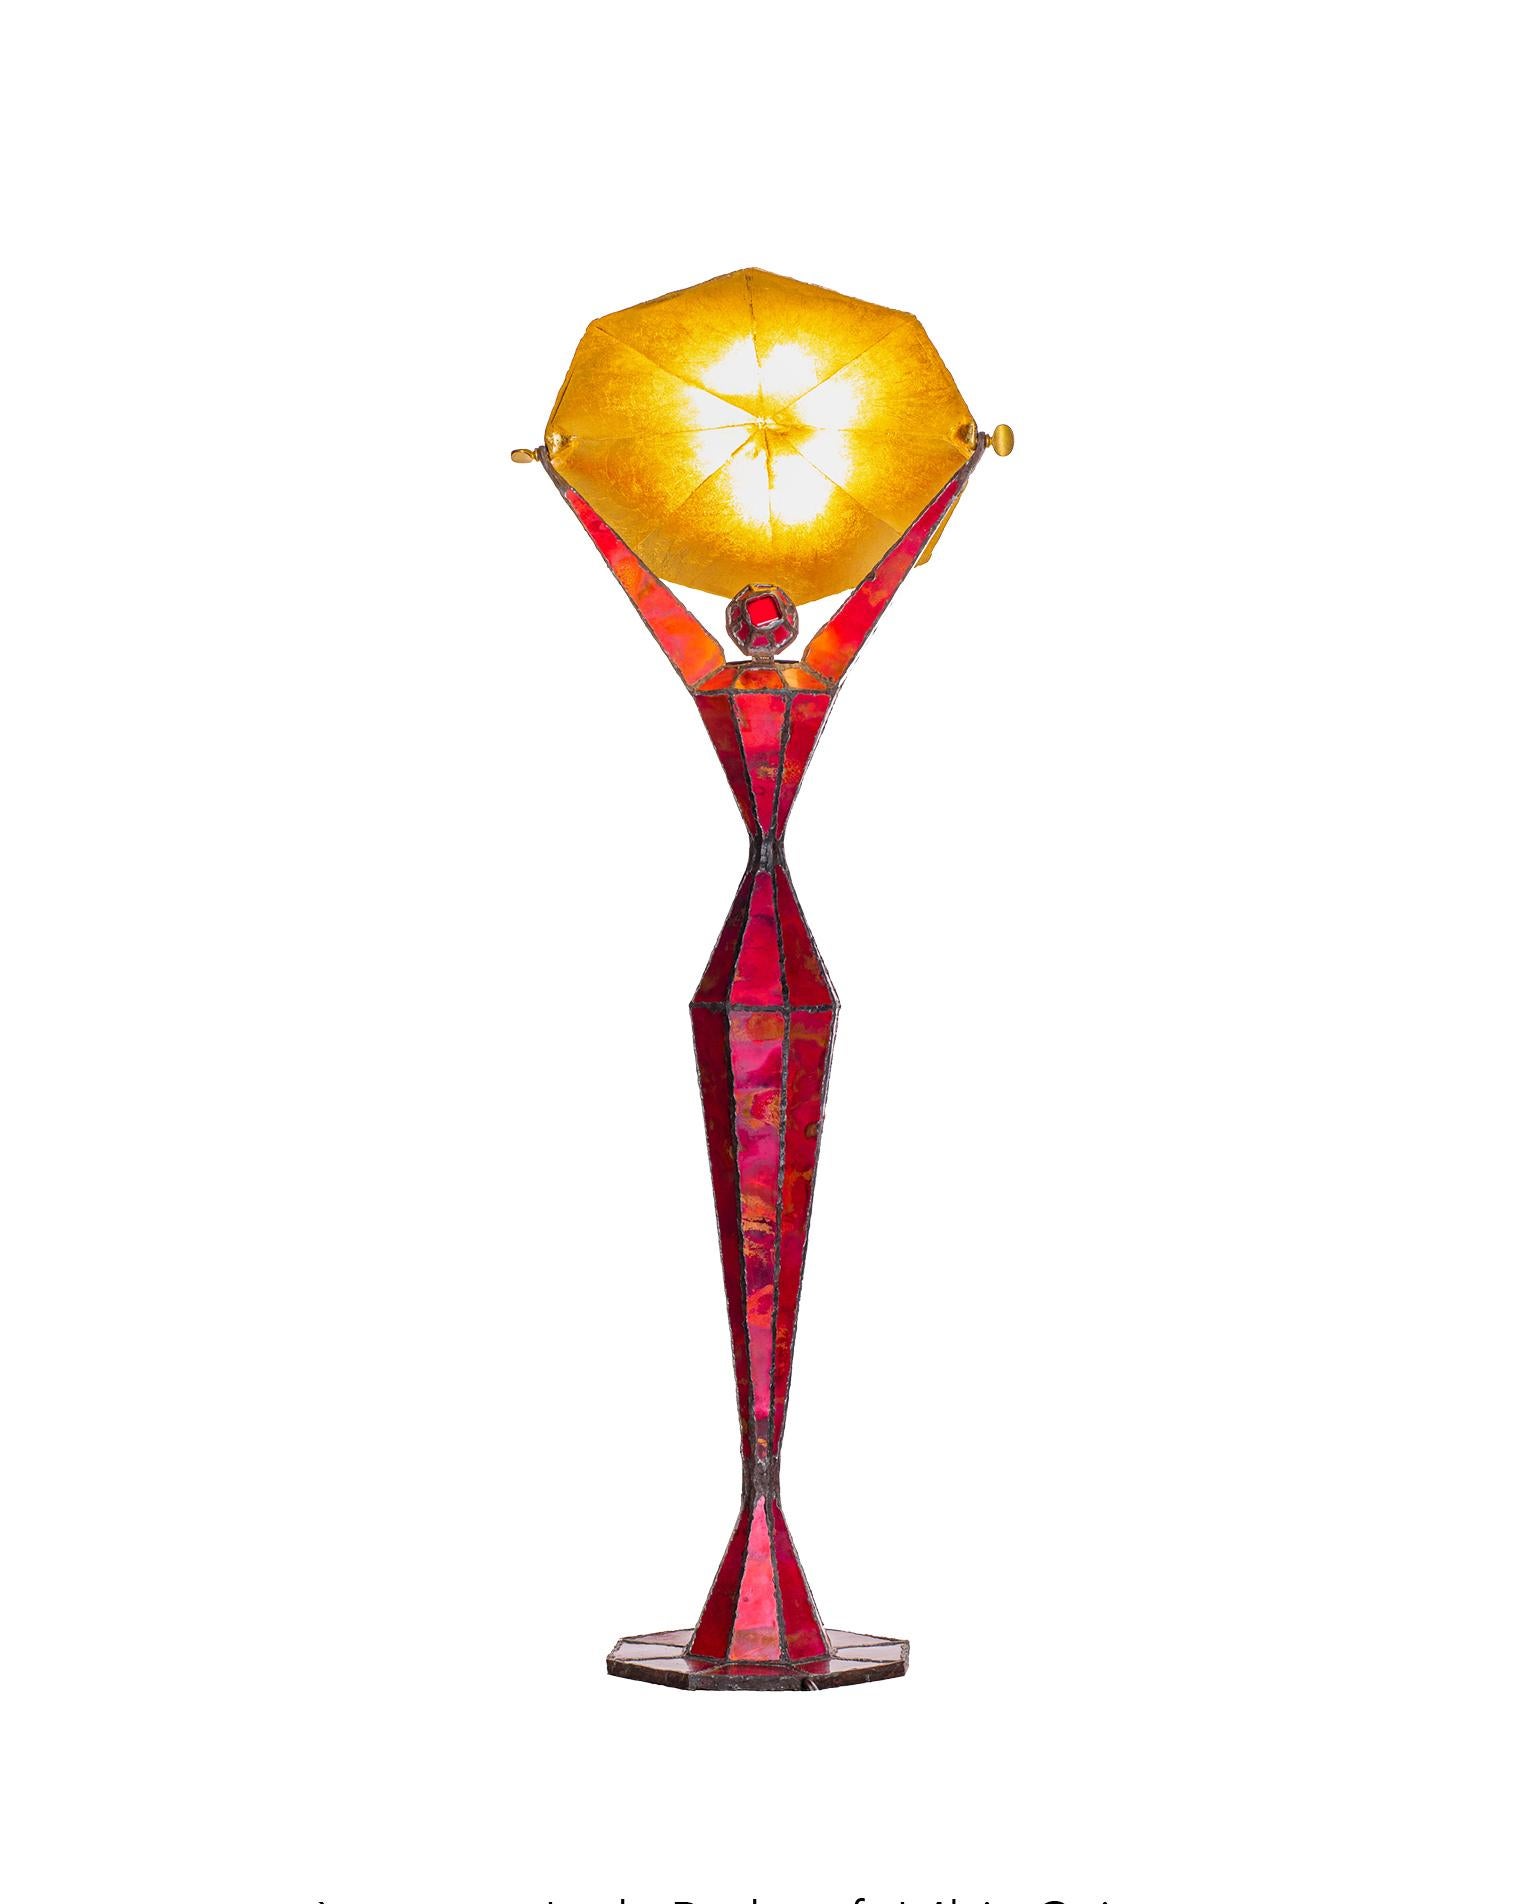 Lampe sculpturale unique du 21e siècle Lady Red par Fantôme

Cuivre oxydé patiné ;
Réflecteur basculant en or
Cabochon amovible pour une couleur dorée ou rouge 
h. 37.4'' x ø 13.8''
Pièce unique, signée, livrée avec un certificat